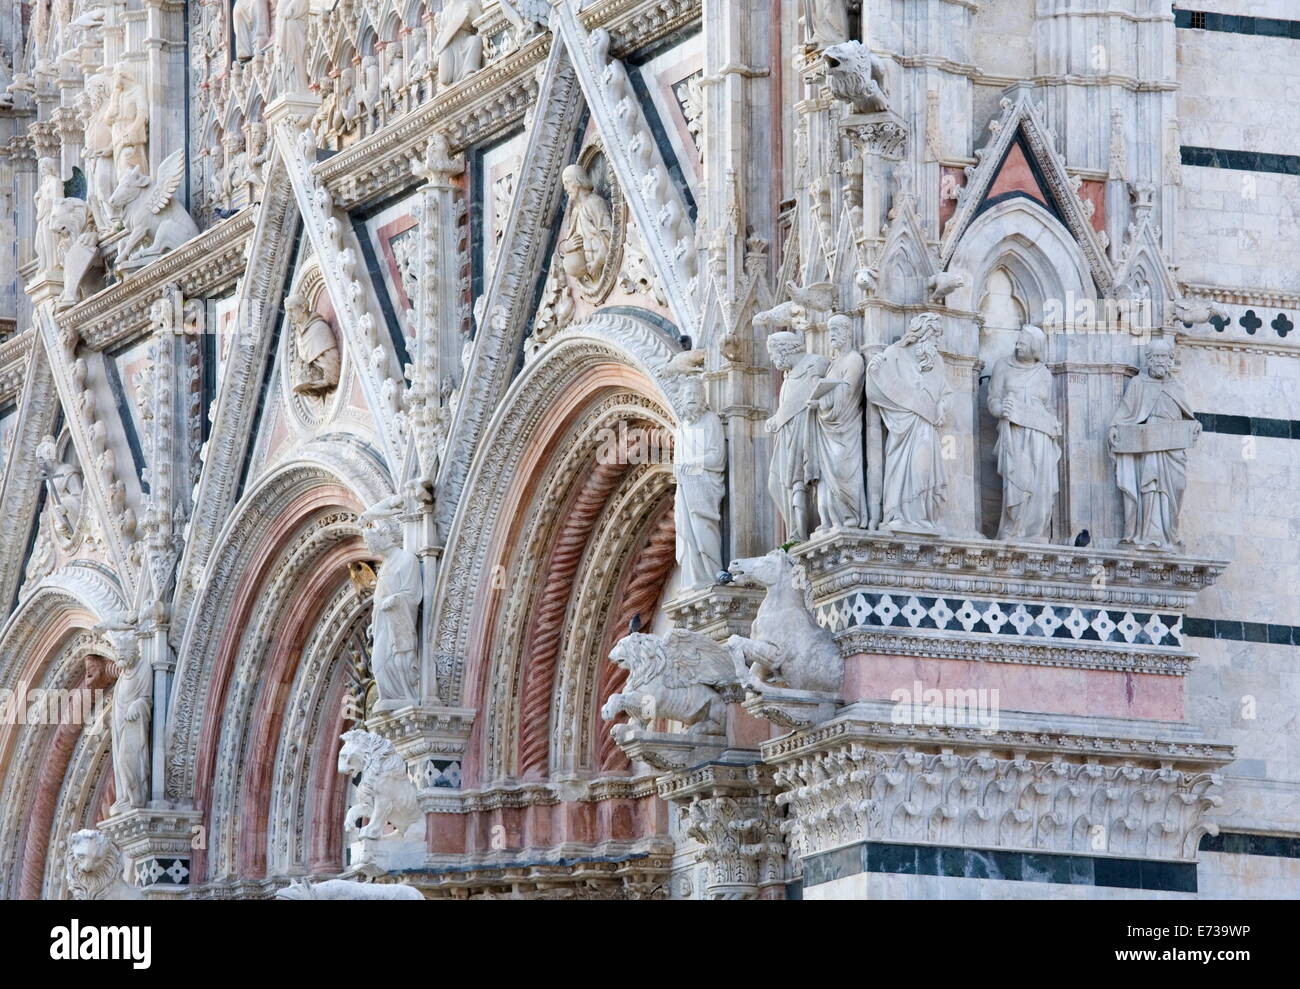 Escultura ornamental en la fachada de la Catedral de Santa Maria Assunta, Sitio del Patrimonio Mundial de la UNESCO, Siena, Toscana, Italia, Europa Foto de stock